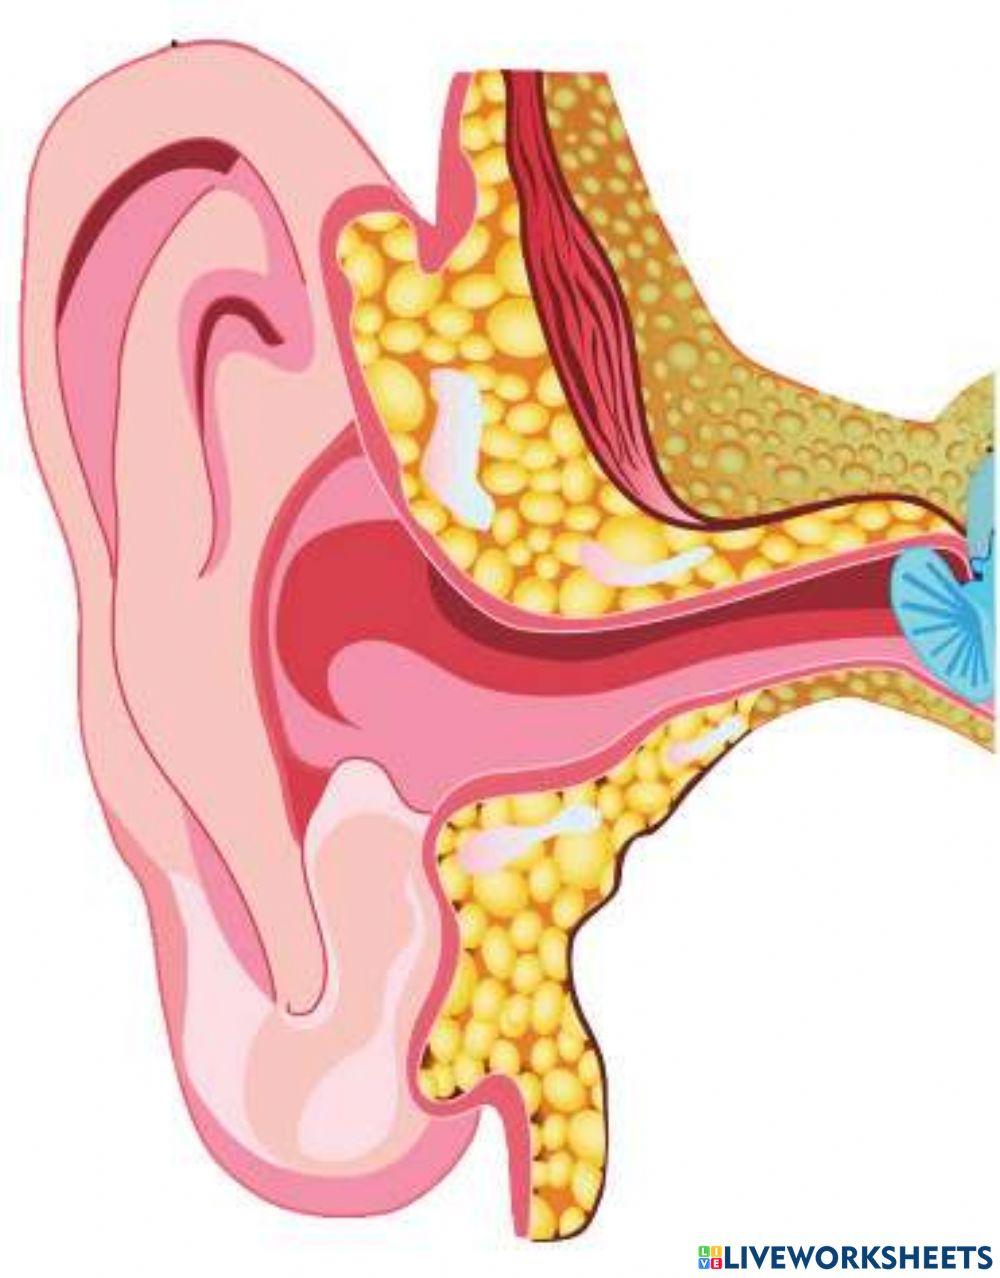 External ear